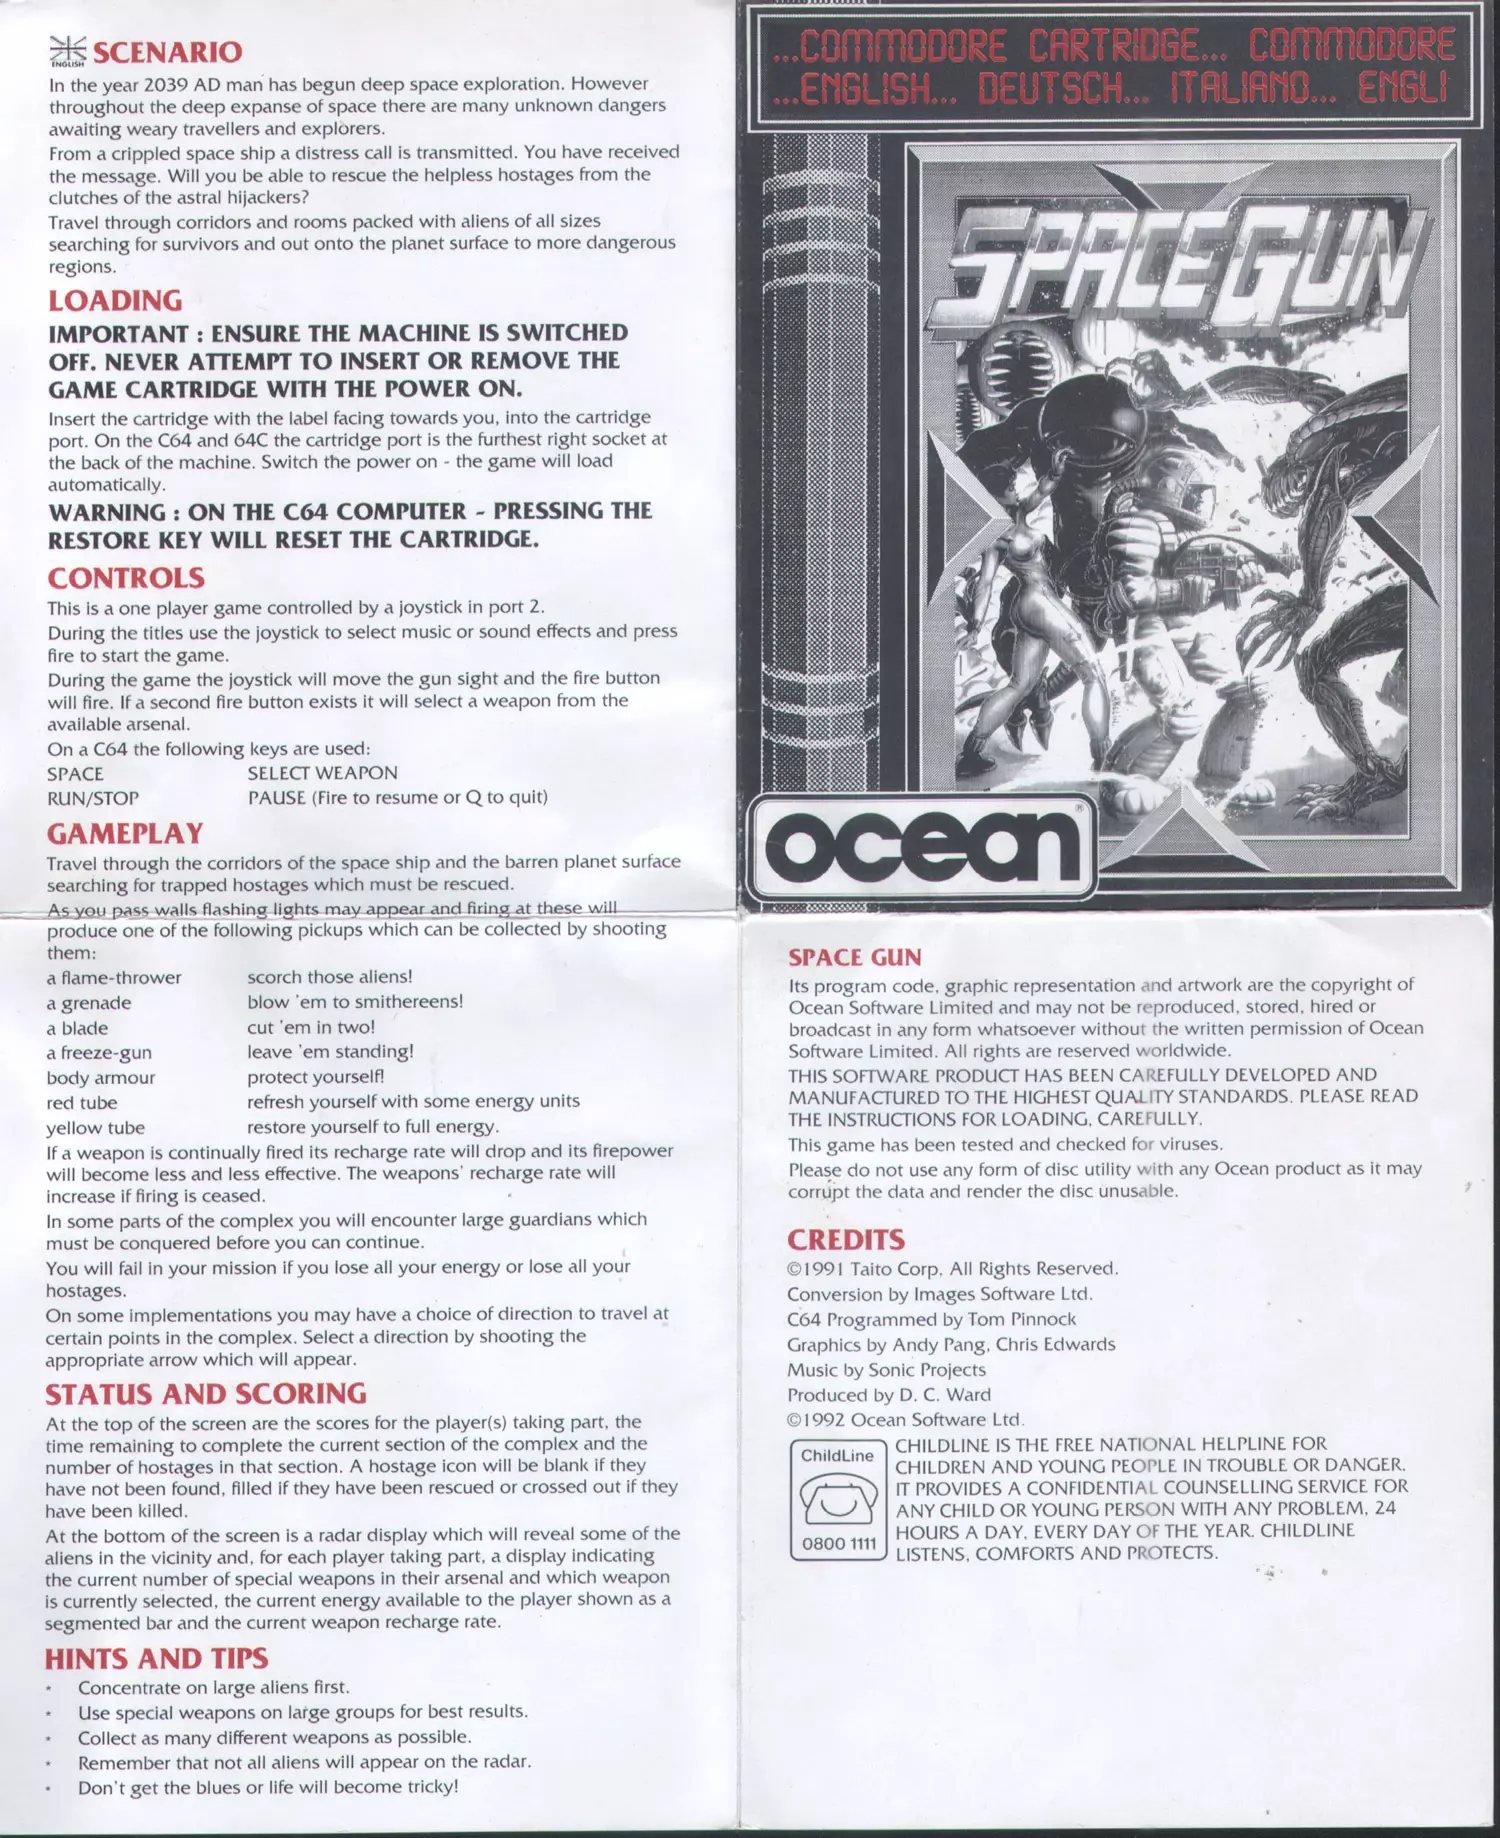 manual for Space Gun